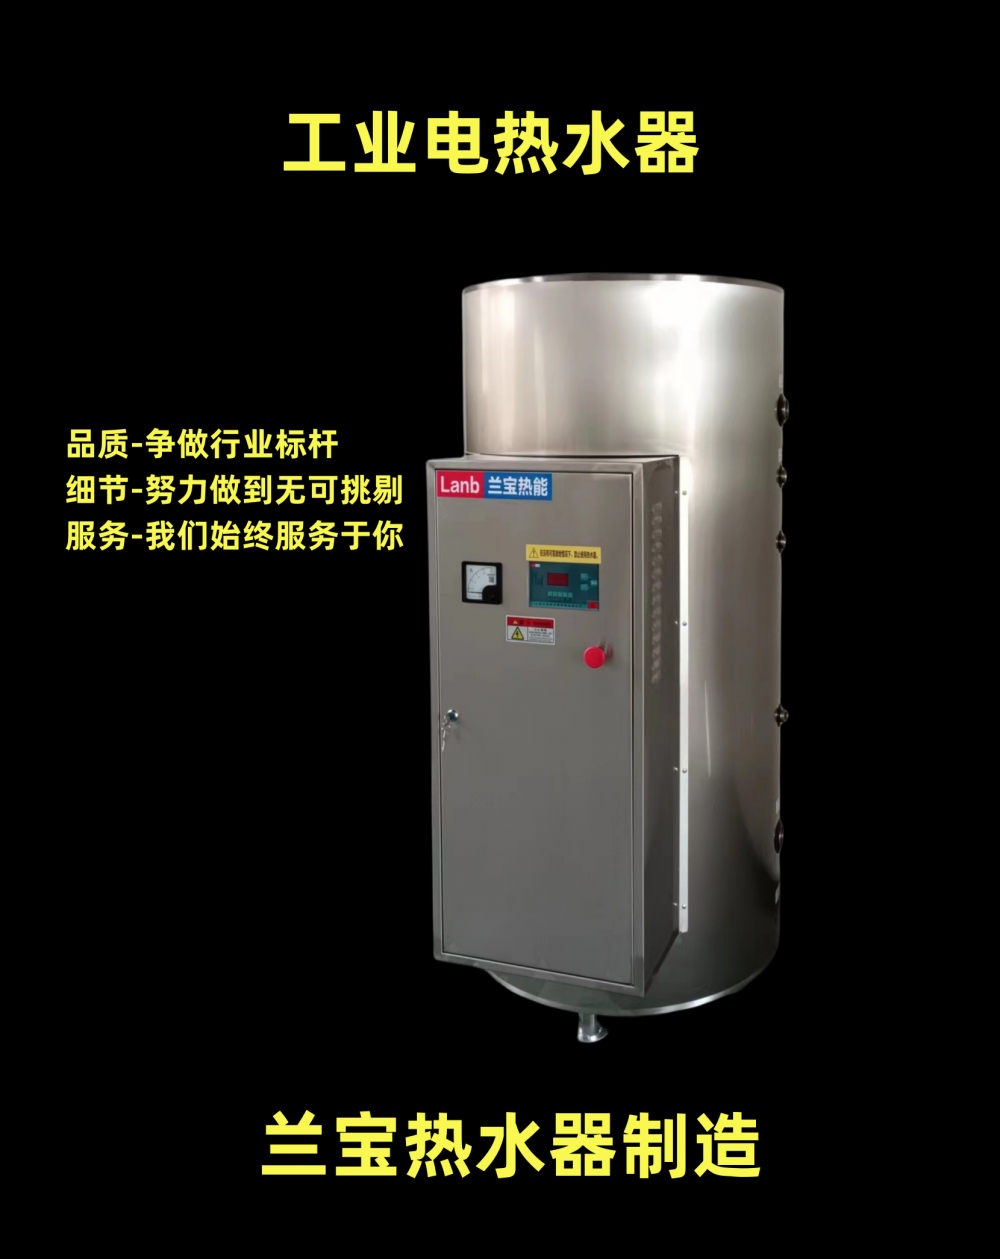 电热水器 储水式电热水器 电热水炉 400L-54kw